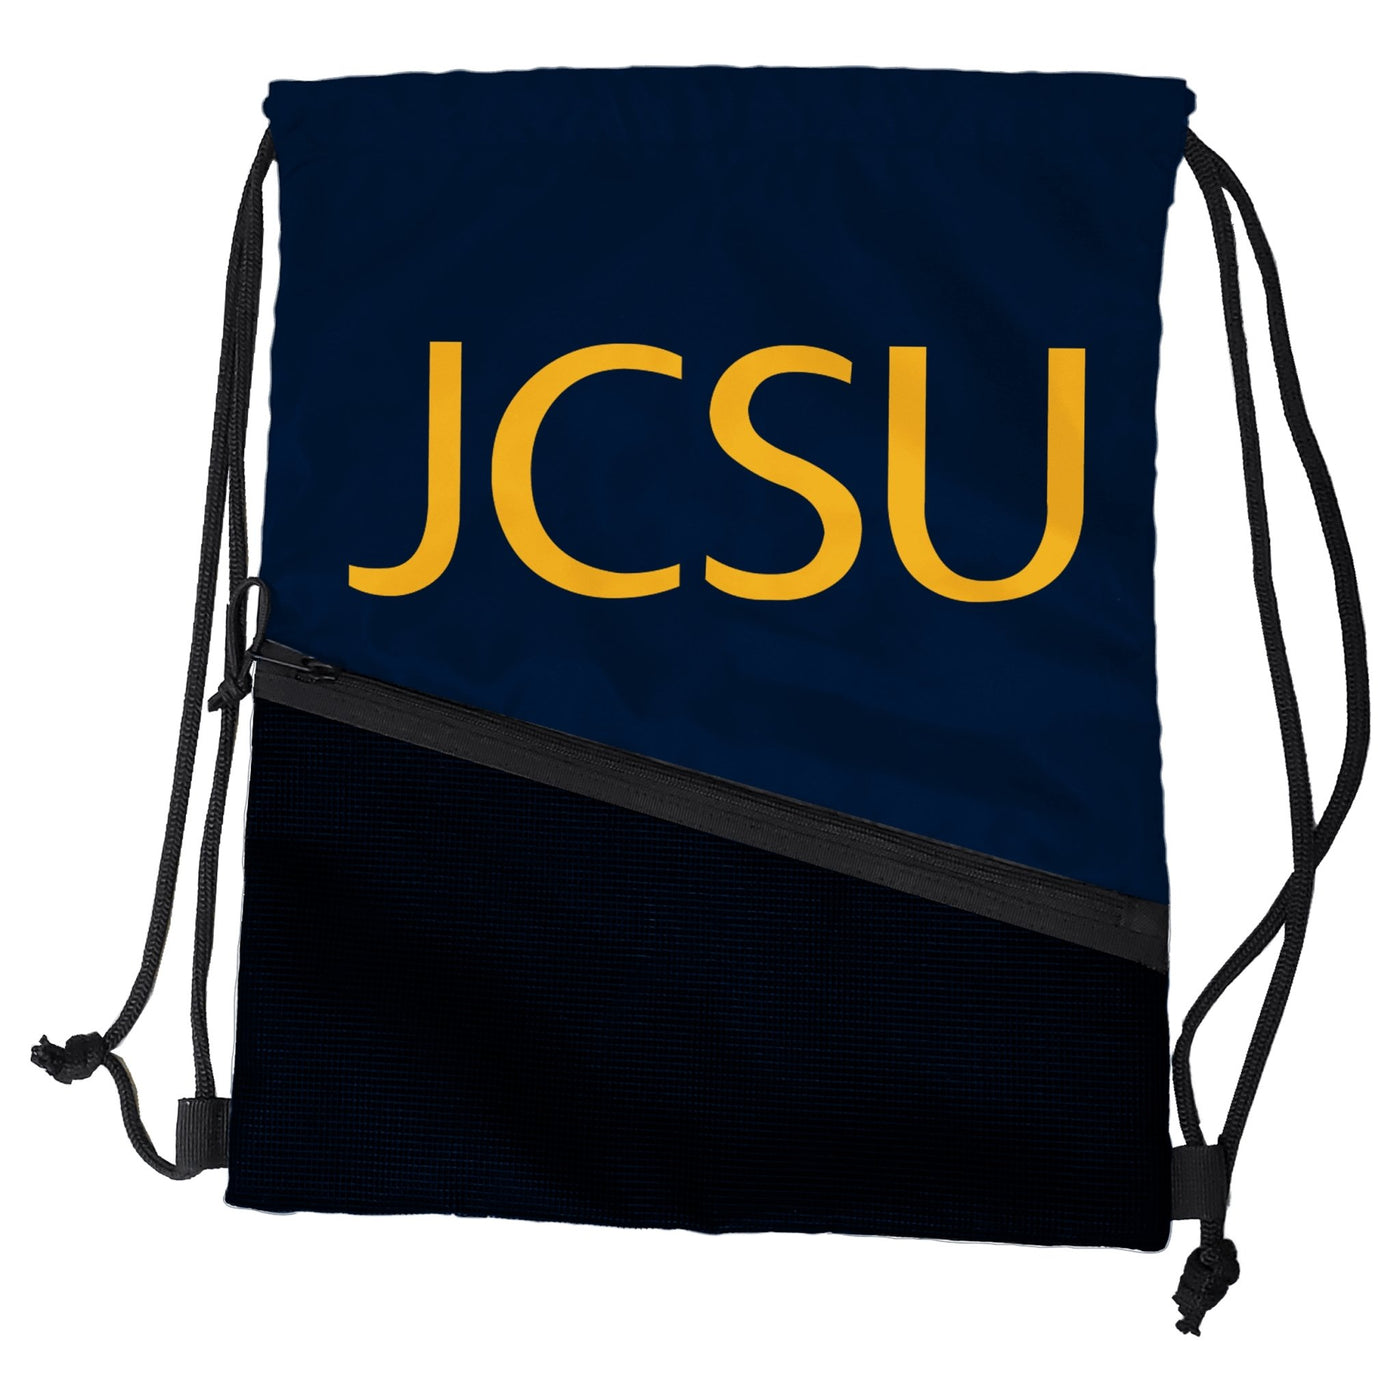 Johnson C Smith University Navy Tilt Backsack - Logo Brands